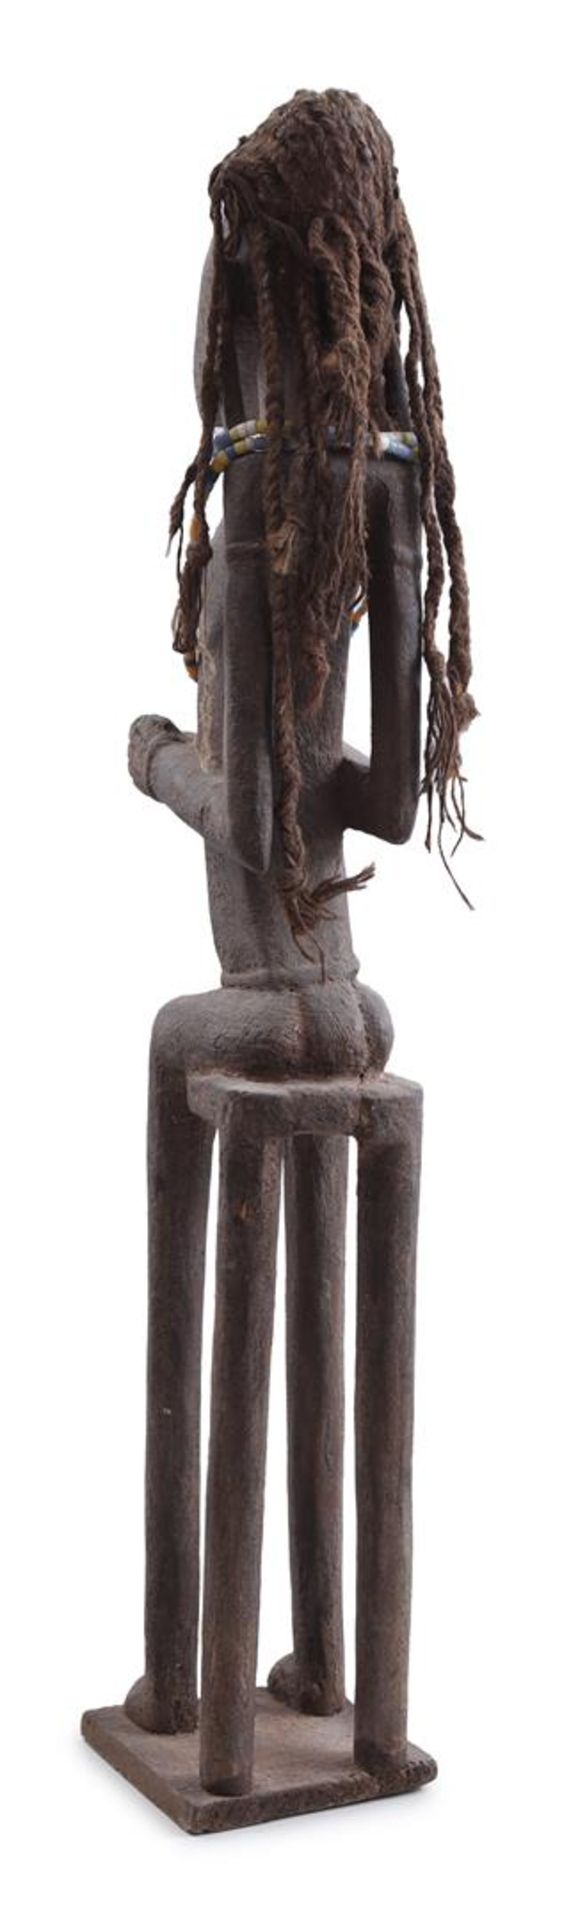 Ceremonial wooden statue, Senufo tribe - Bild 3 aus 3